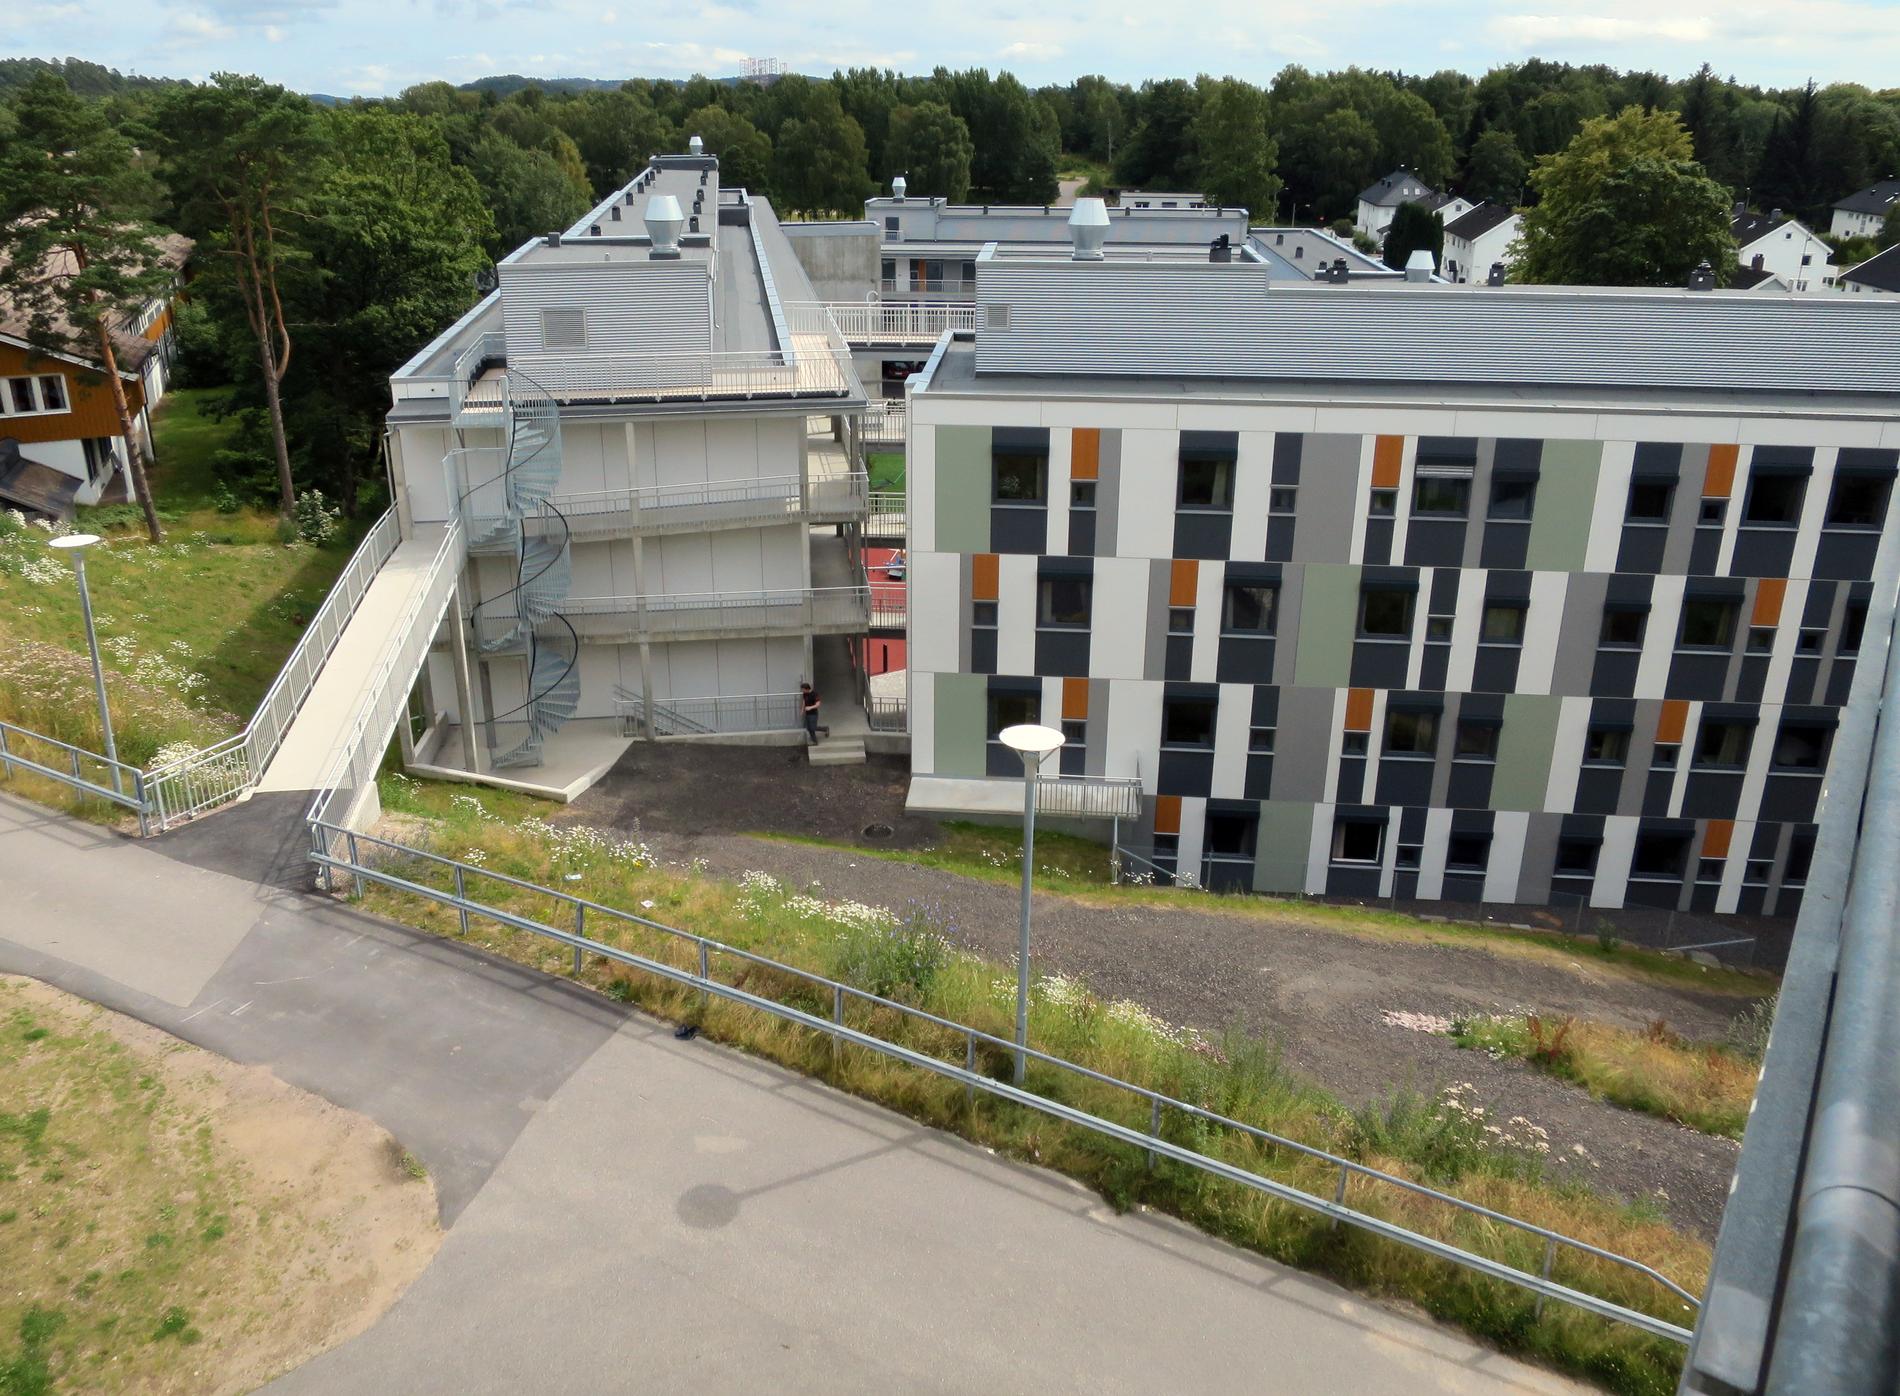 Studentboligene ved campus i Kristiansand er populære.